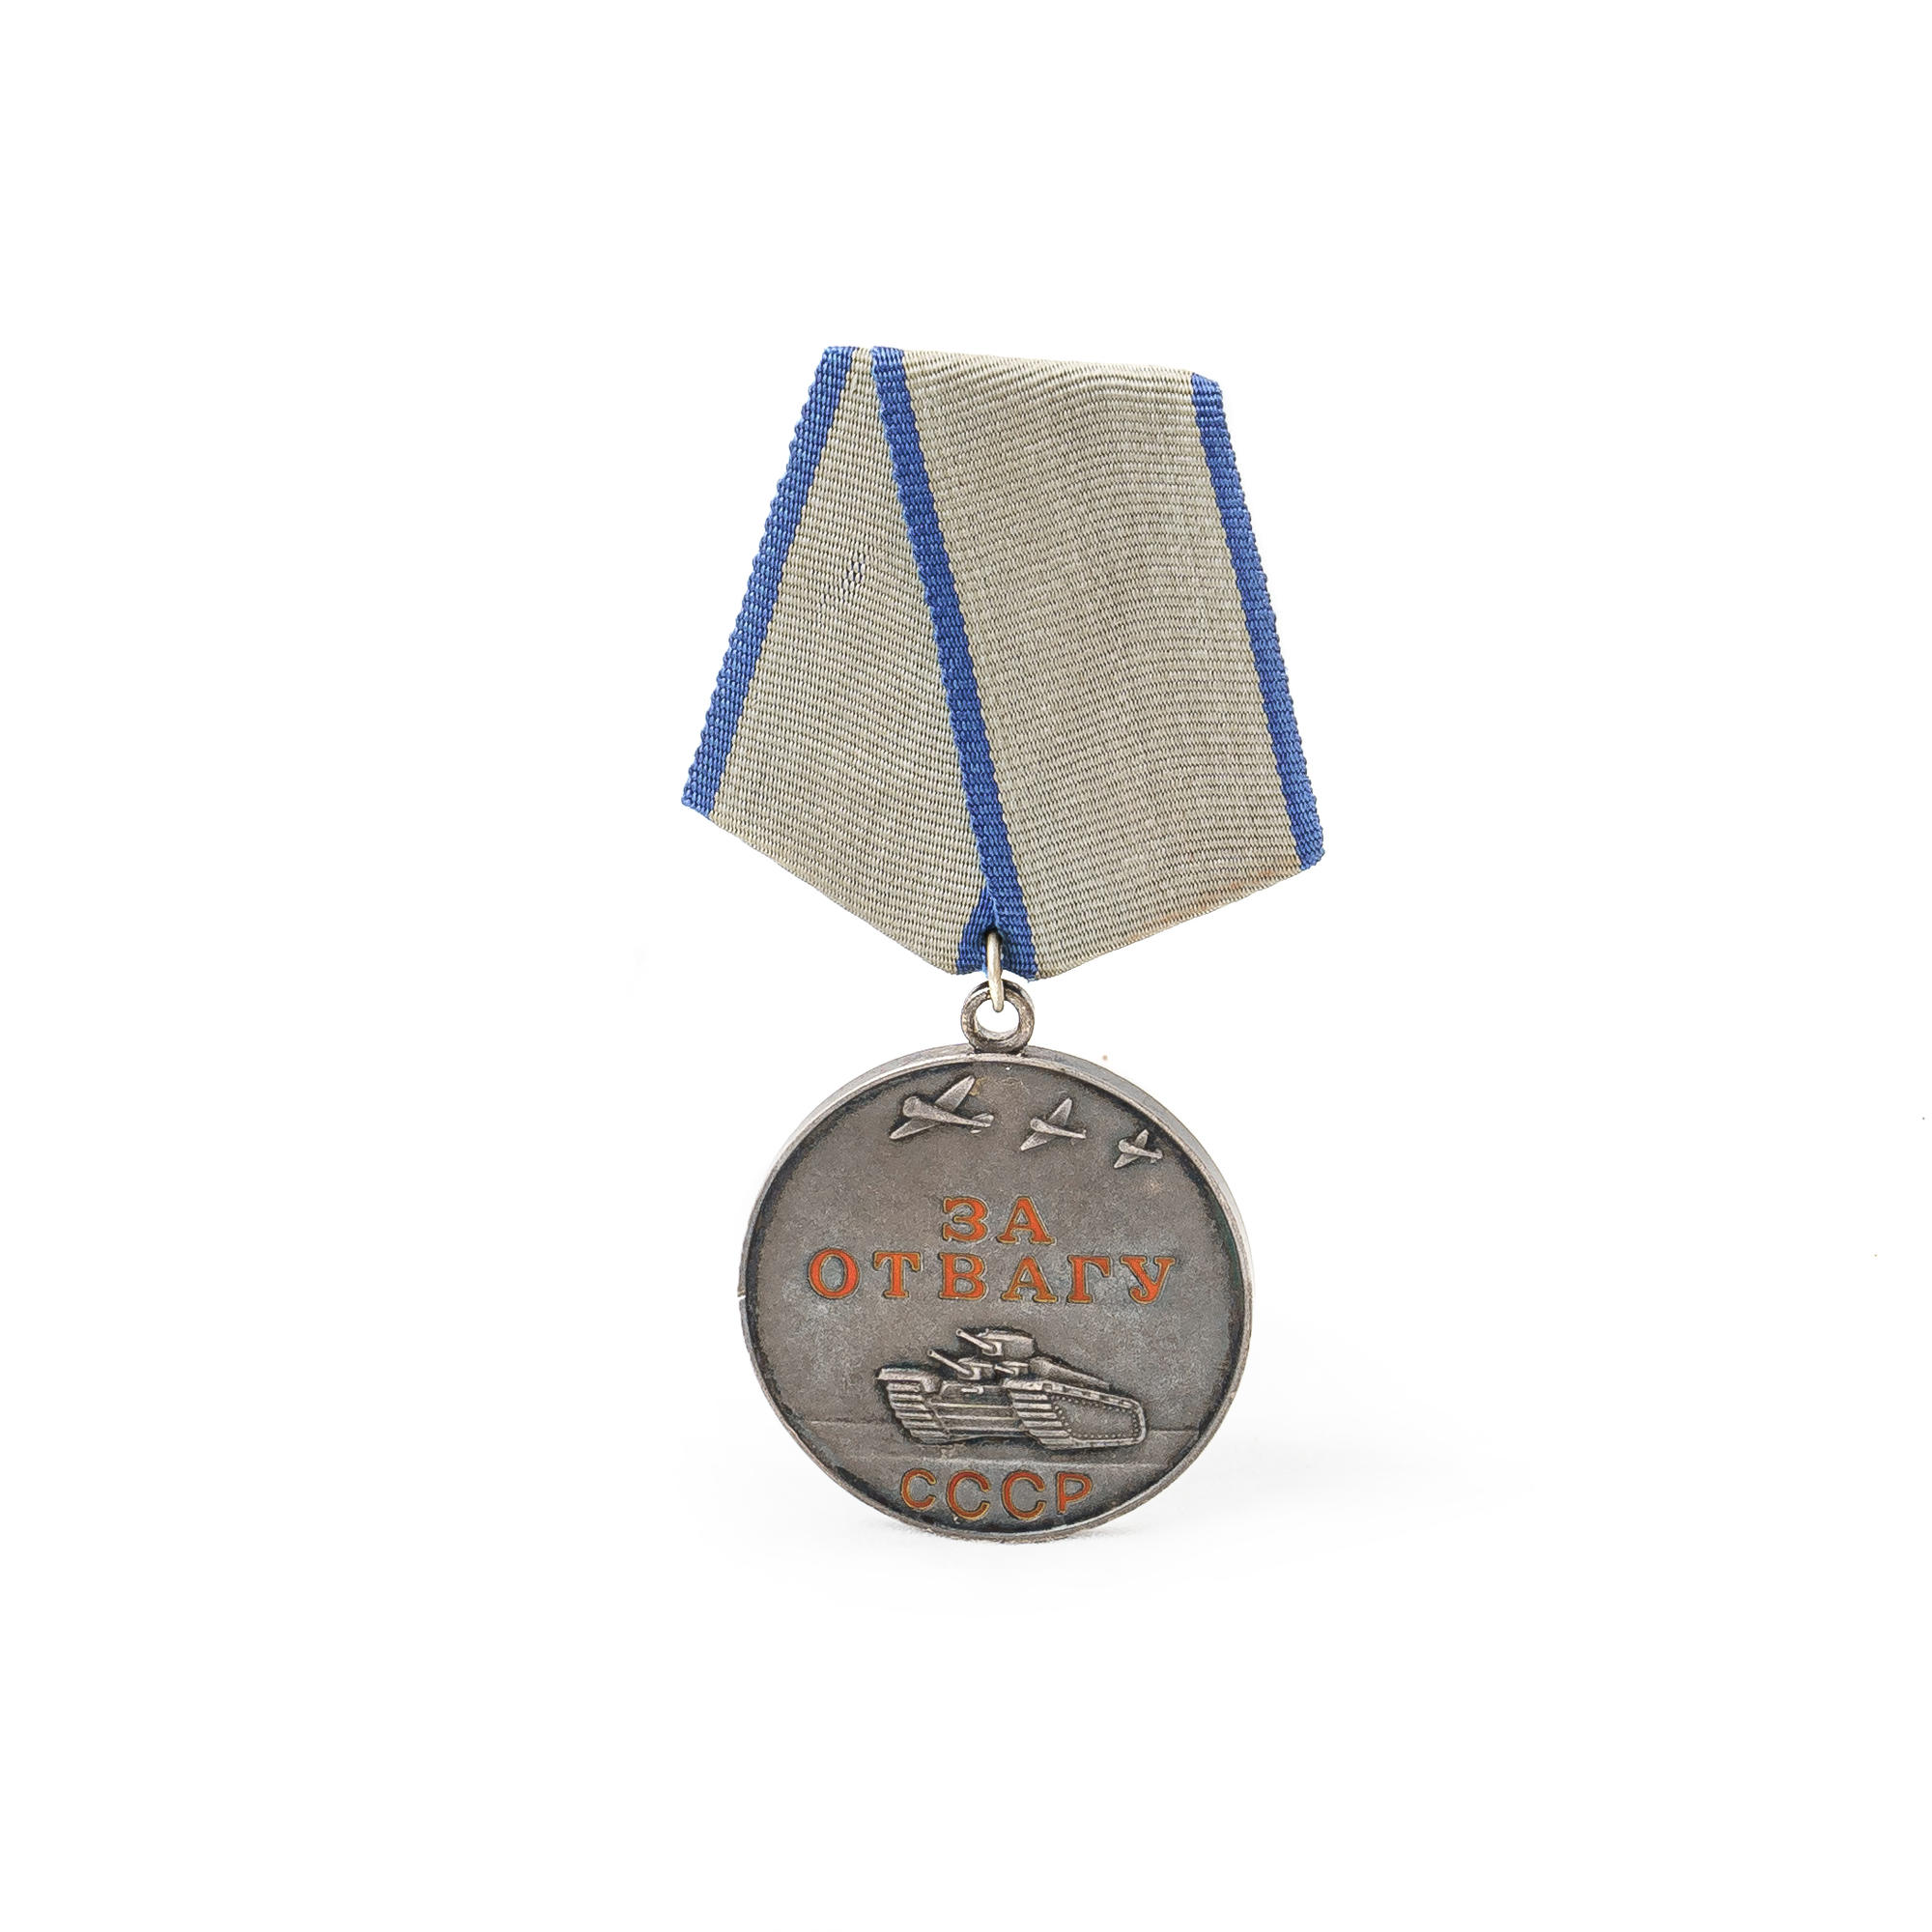 Фото медали за отвагу в великой отечественной войне 1941 1945